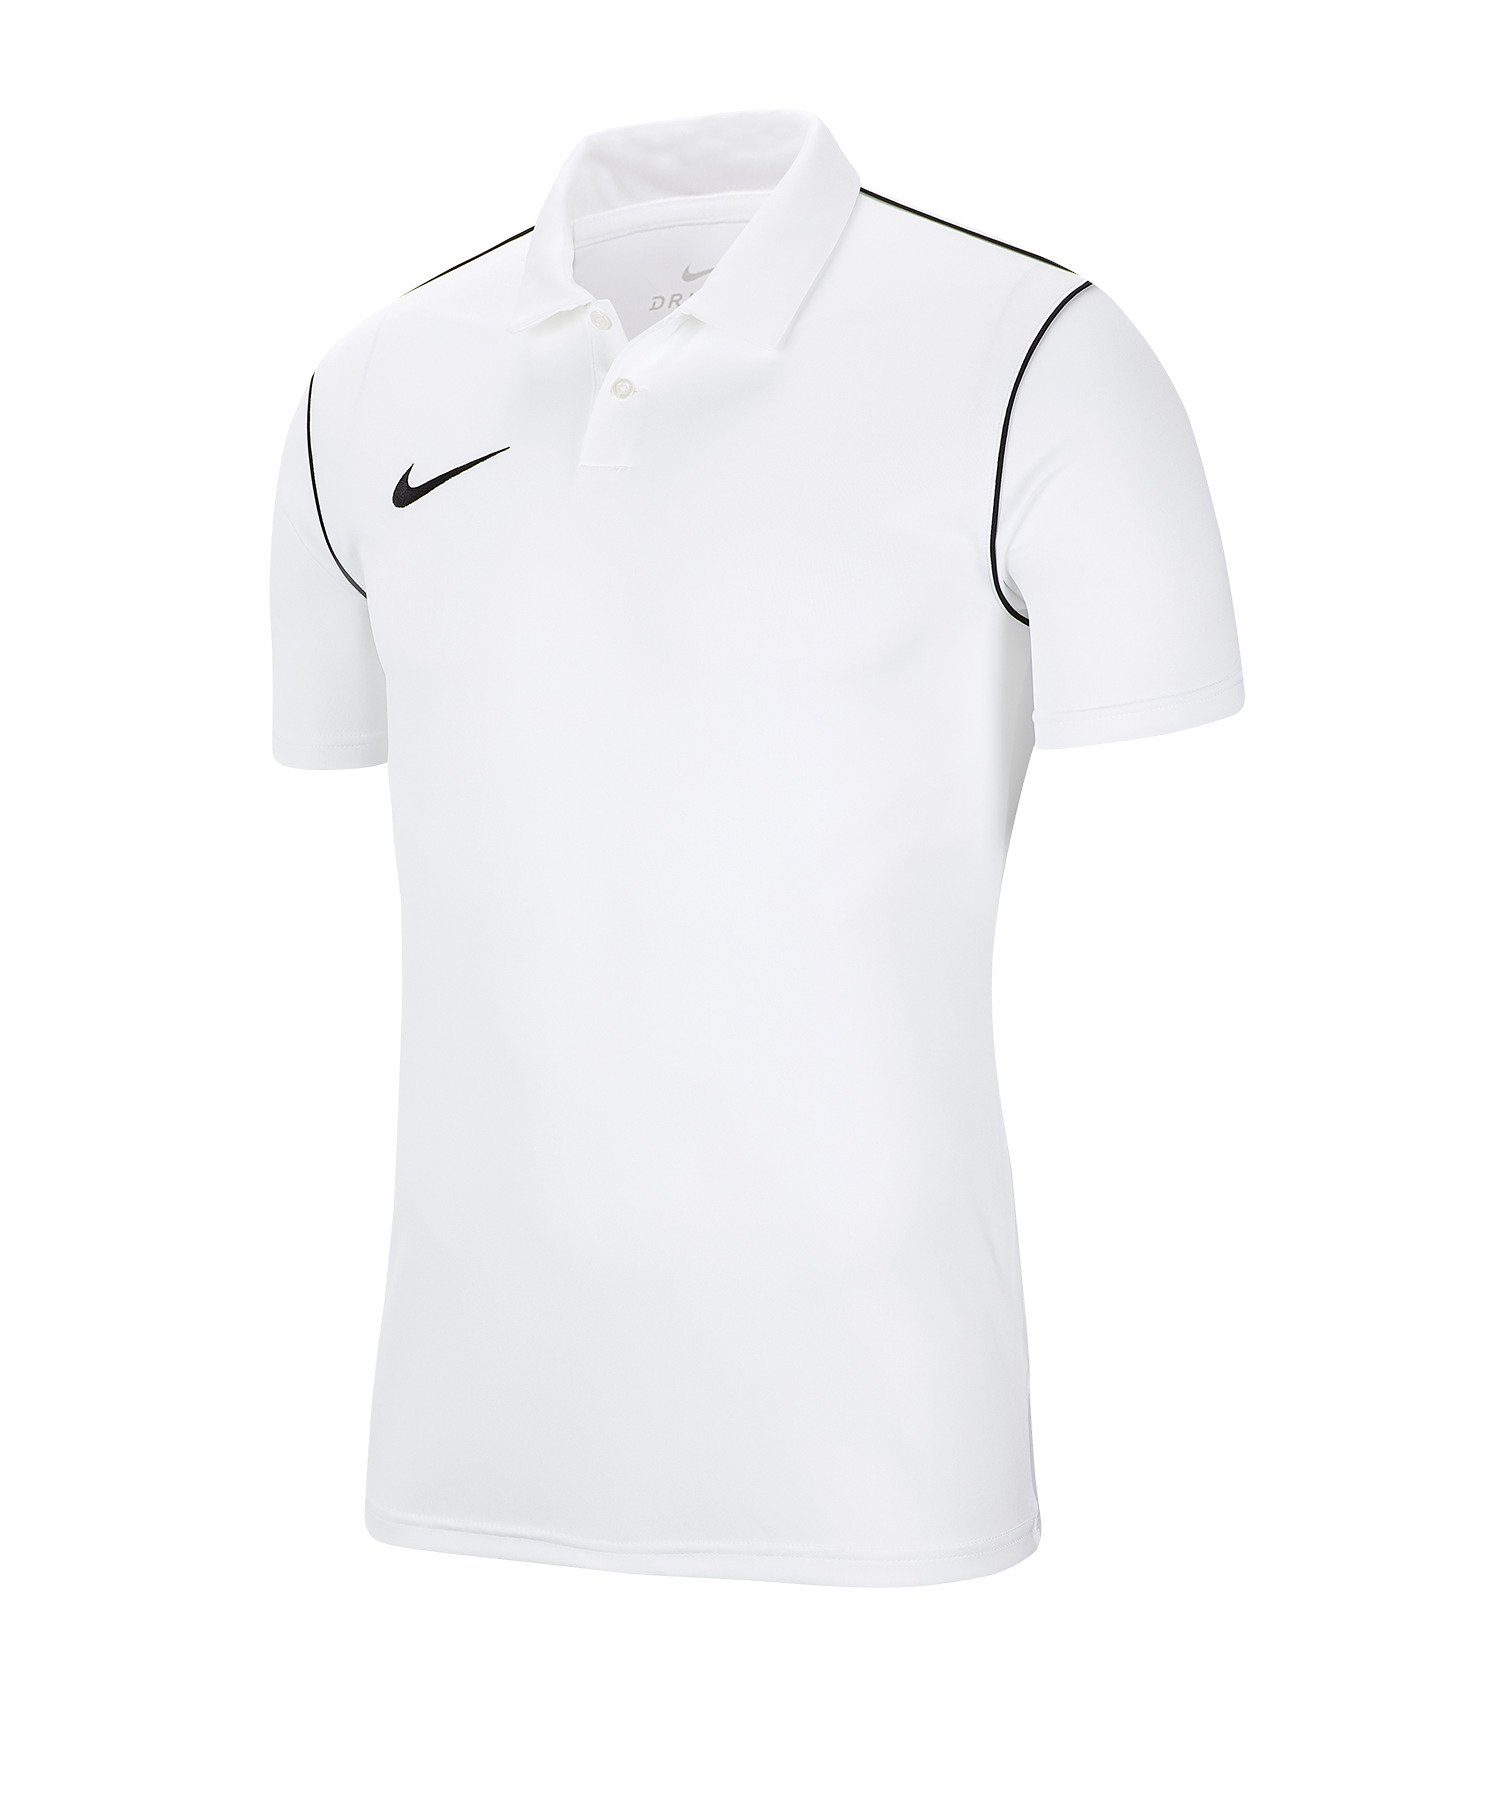 20 Nike default weiss Park T-Shirt Poloshirt